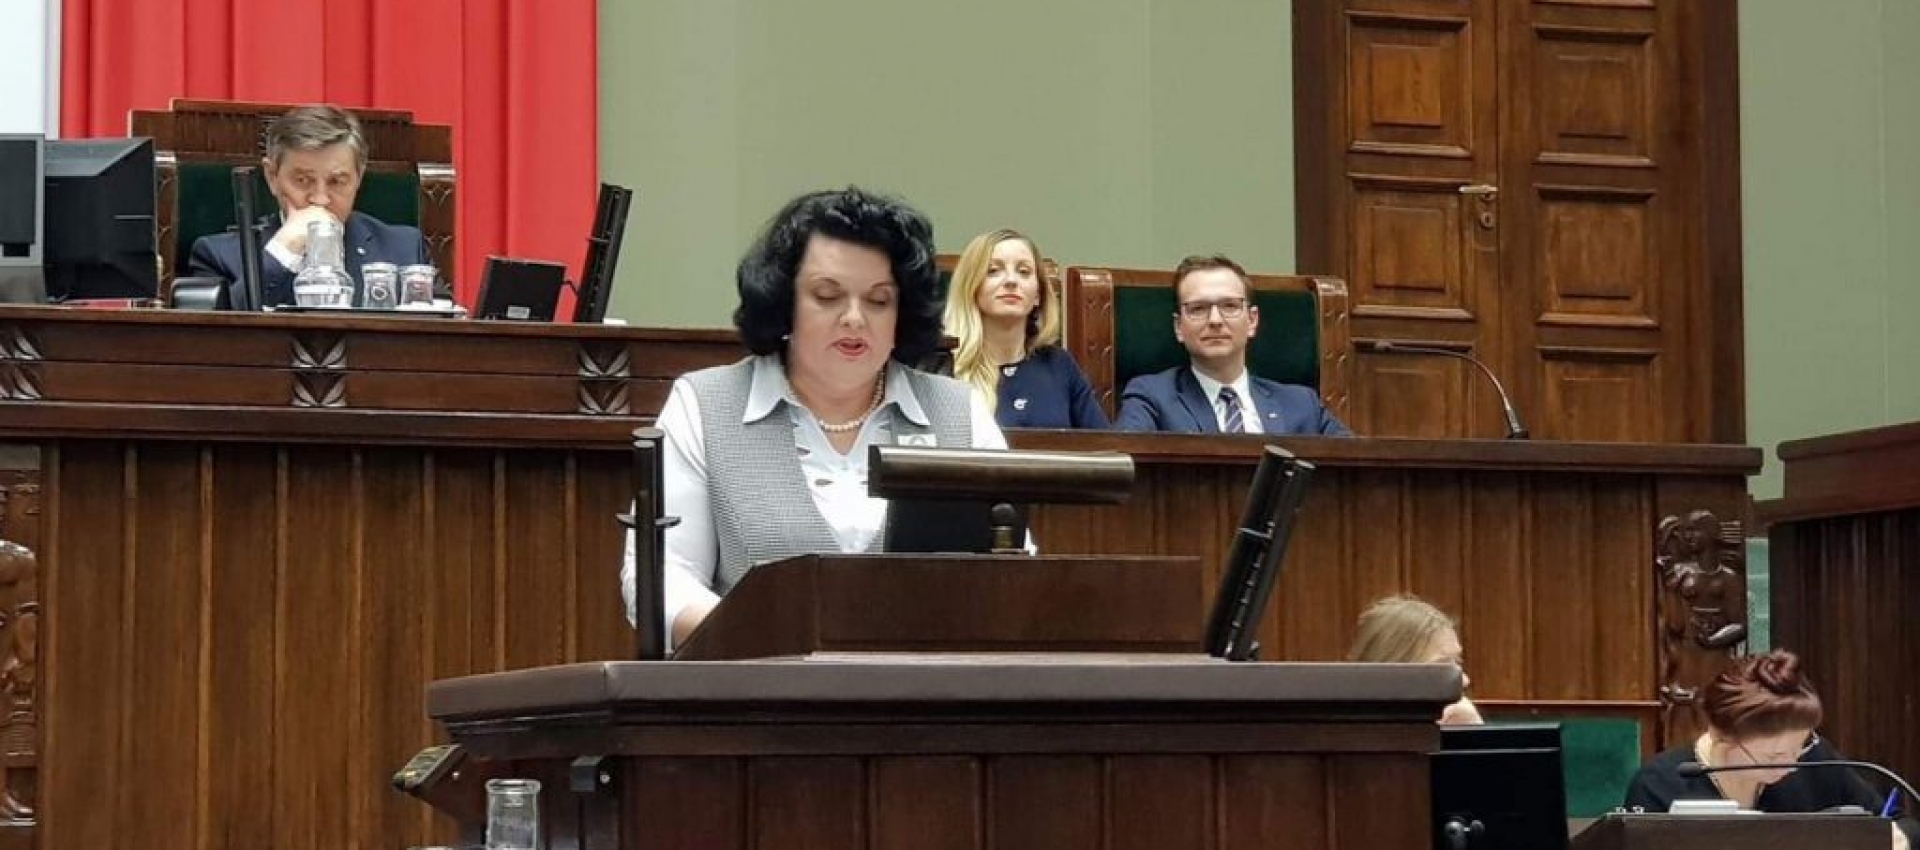 Barbara Dziuk - O apolityczności redakcji prasowych